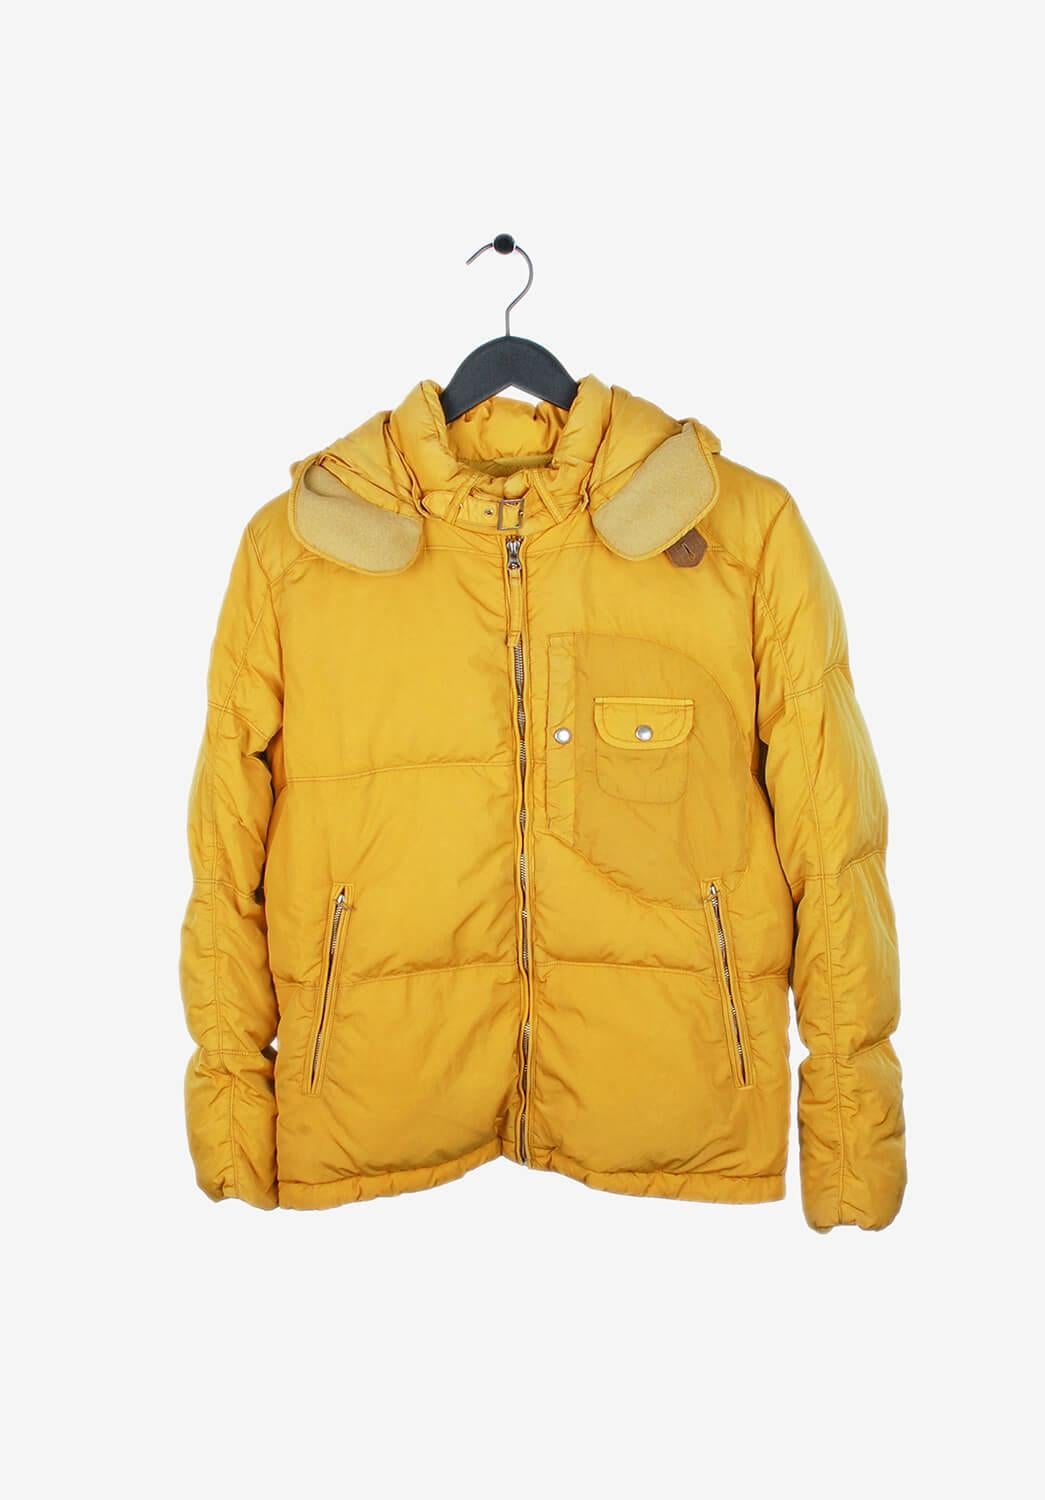 Artikel zum Verkauf ist 100% echte C.P Company Down Hooded Google Jacket
Farbe: Gelb
(Eine tatsächliche Farbe kann ein wenig variieren aufgrund individueller Computer-Bildschirm Interpretation)
MATERIAL: 100% Polyamid
Tag Größe: 48IT (M)
Diese Jacke